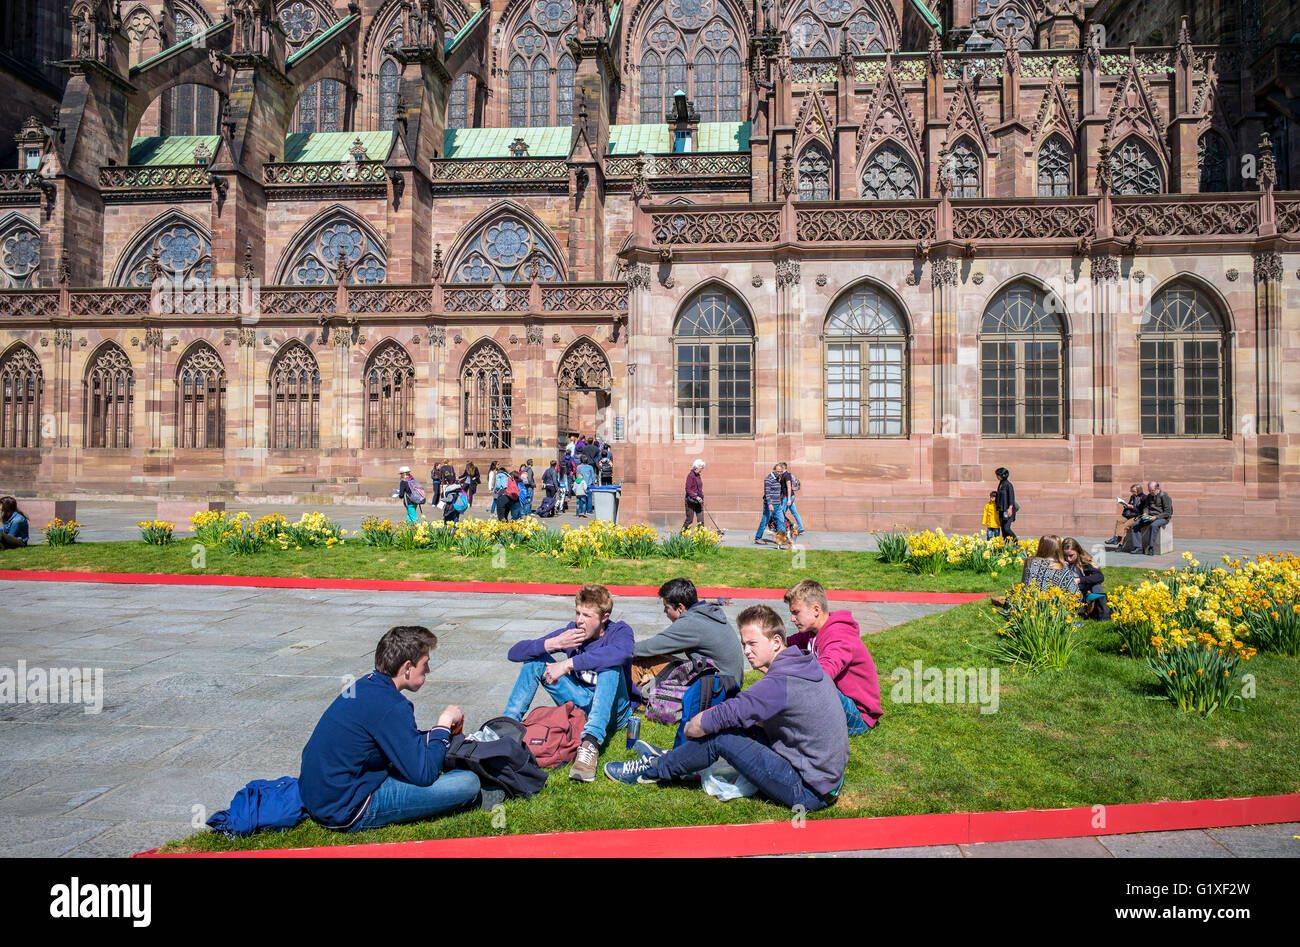 Les adolescents se détendre, Place du Château et la place Notre-Dame cathédrale gothique du 14e siècle, Strasbourg, Alsace, France Banque D'Images